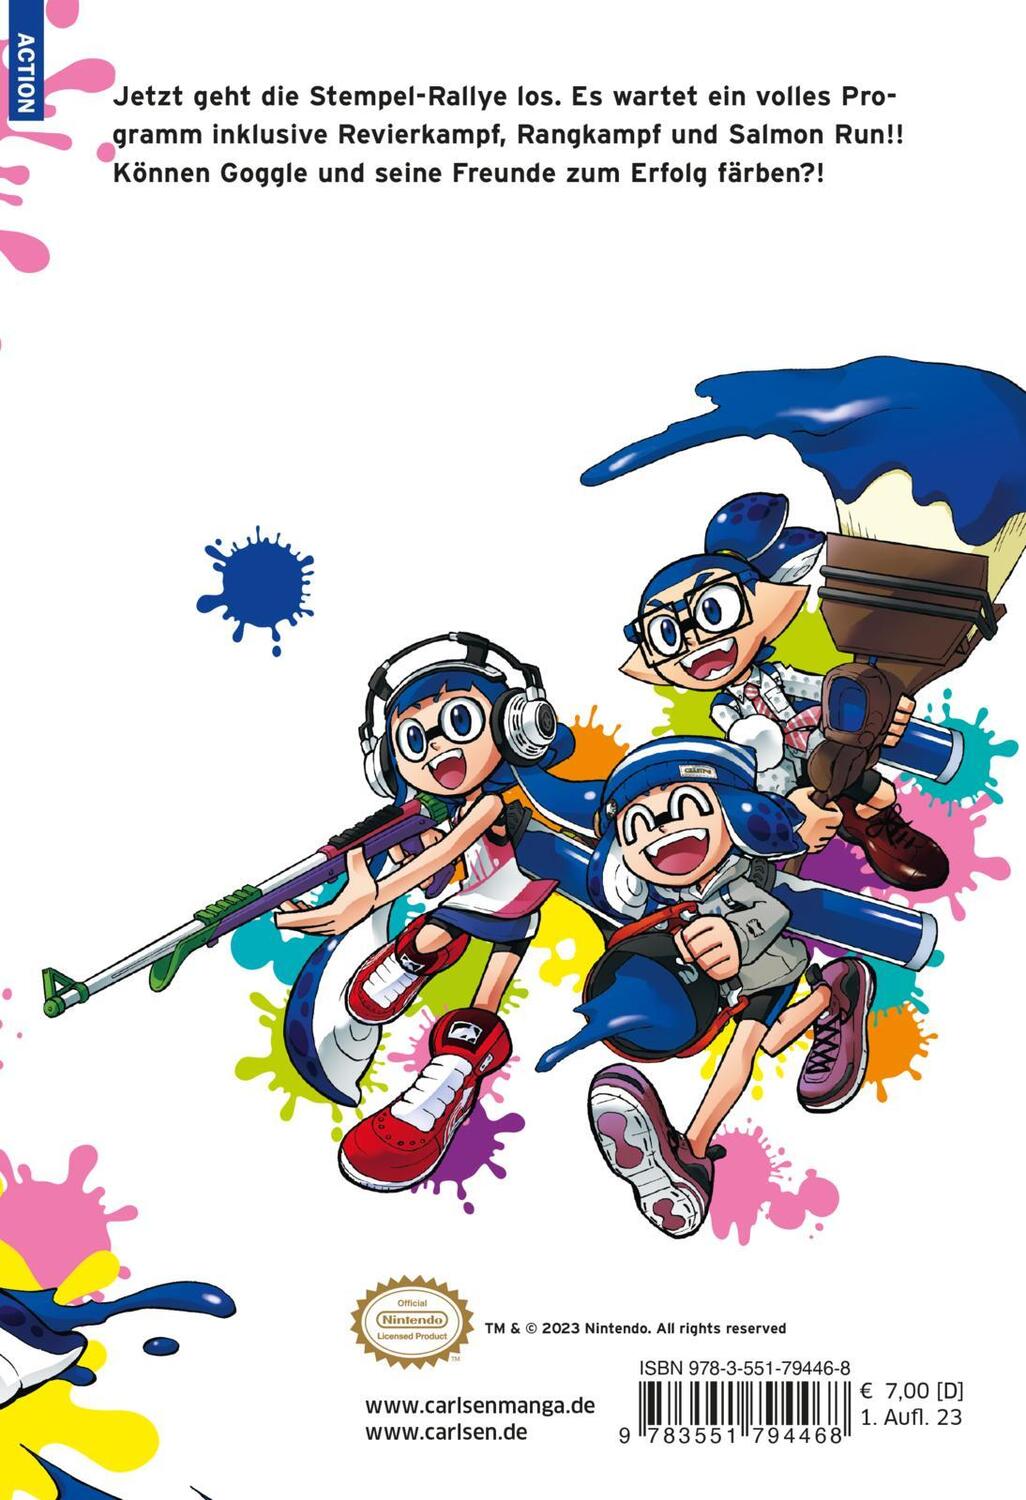 Rückseite: 9783551794468 | Splatoon 16 | Das Nintendo-Game als Manga! Ideal für Kinder und Gamer!